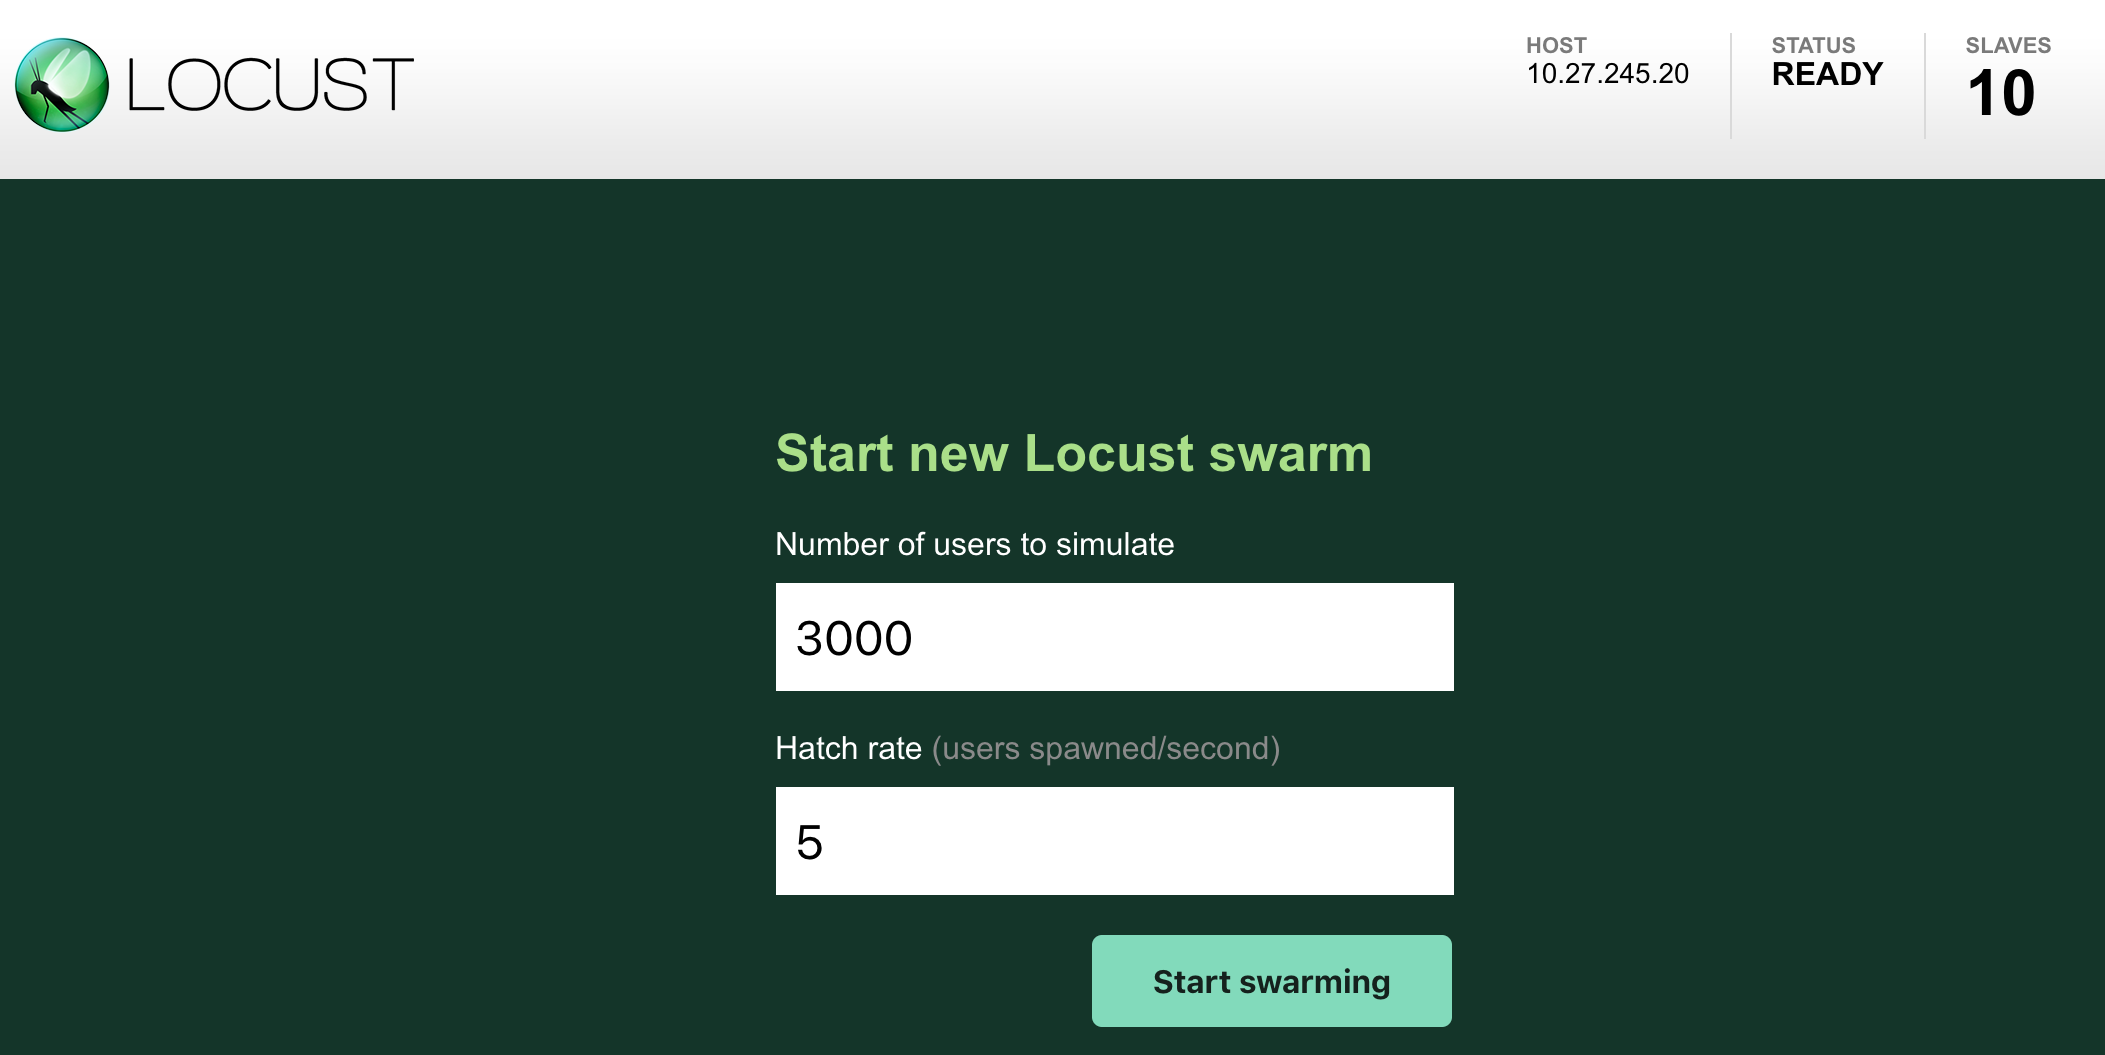 Eine neue Locust-Swarm wird gestartet.